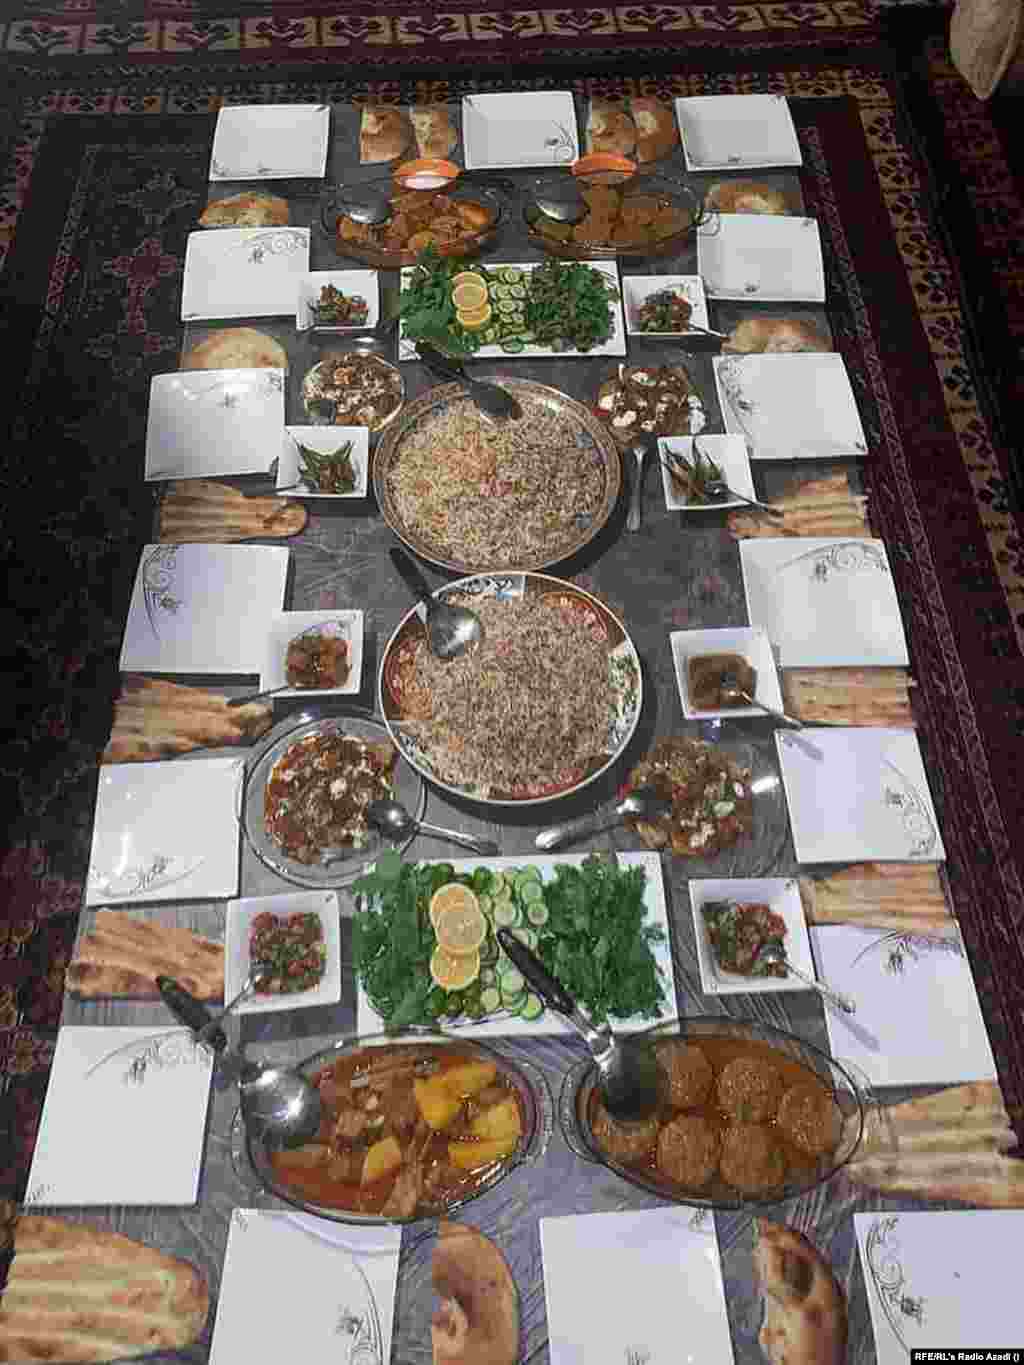 Hasibullah szerint a tálibok hatalomátvétele előtt családja rendszeresen vásárolt húst, friss zöldséget és gyümölcsöt. Ezen a fotón mutatta meg, hogyan nézett ki az étkezőszőnyege egy évvel ezelőtt.